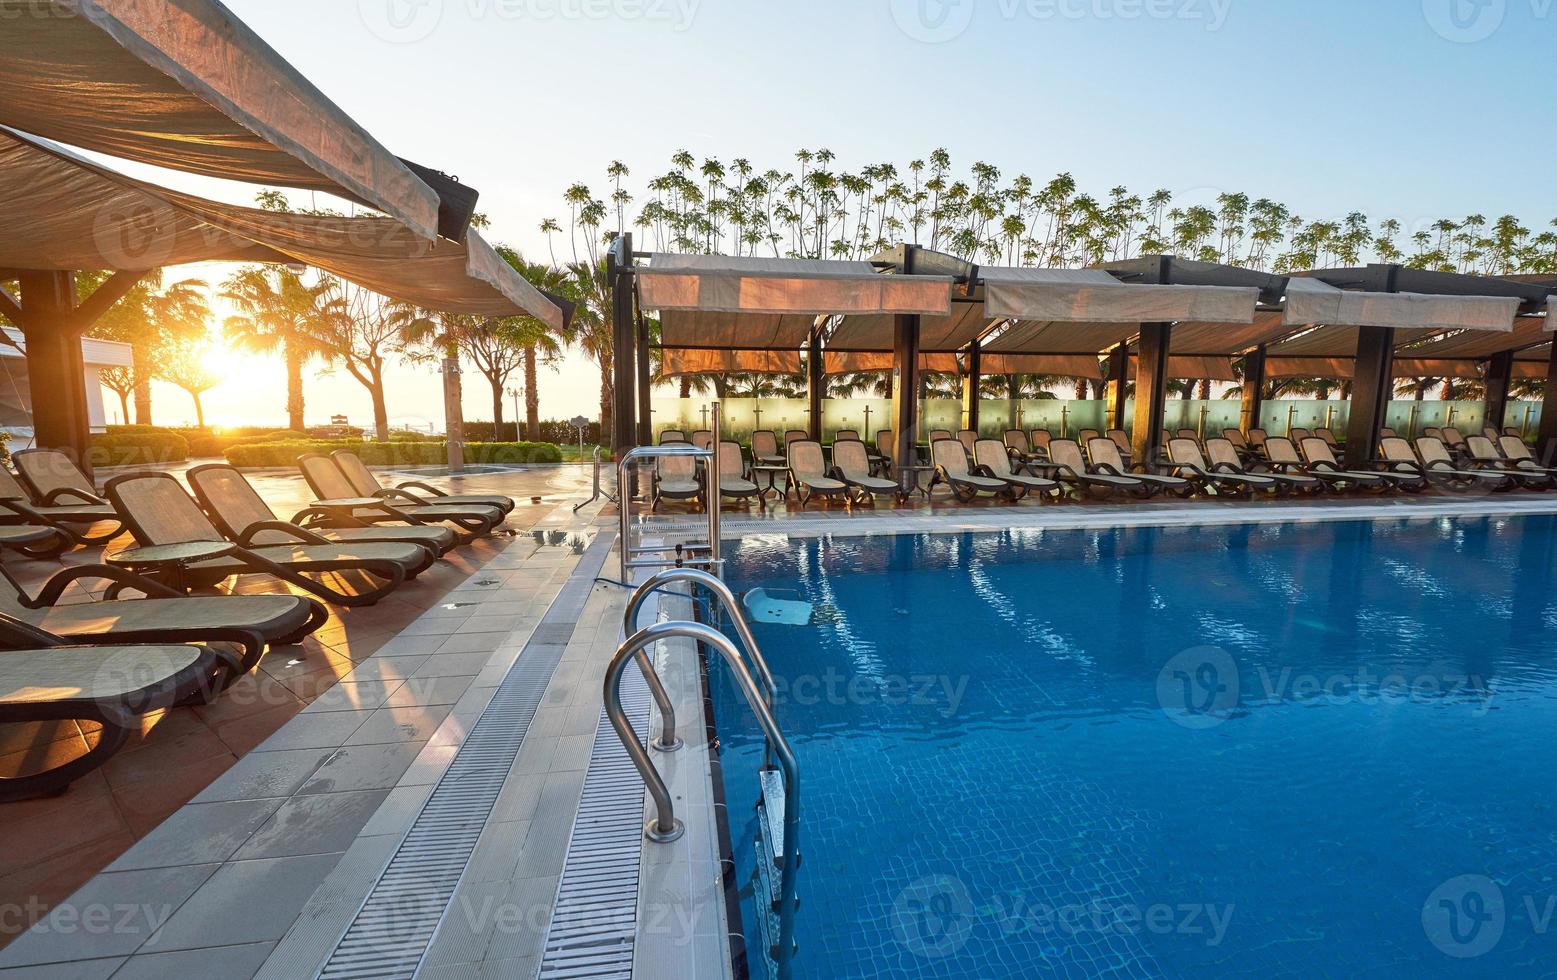 tipo complexo de entretenimento. o popular resort com piscinas e parques aquáticos na turquia com mais de 5 milhões de visitantes por ano. foto